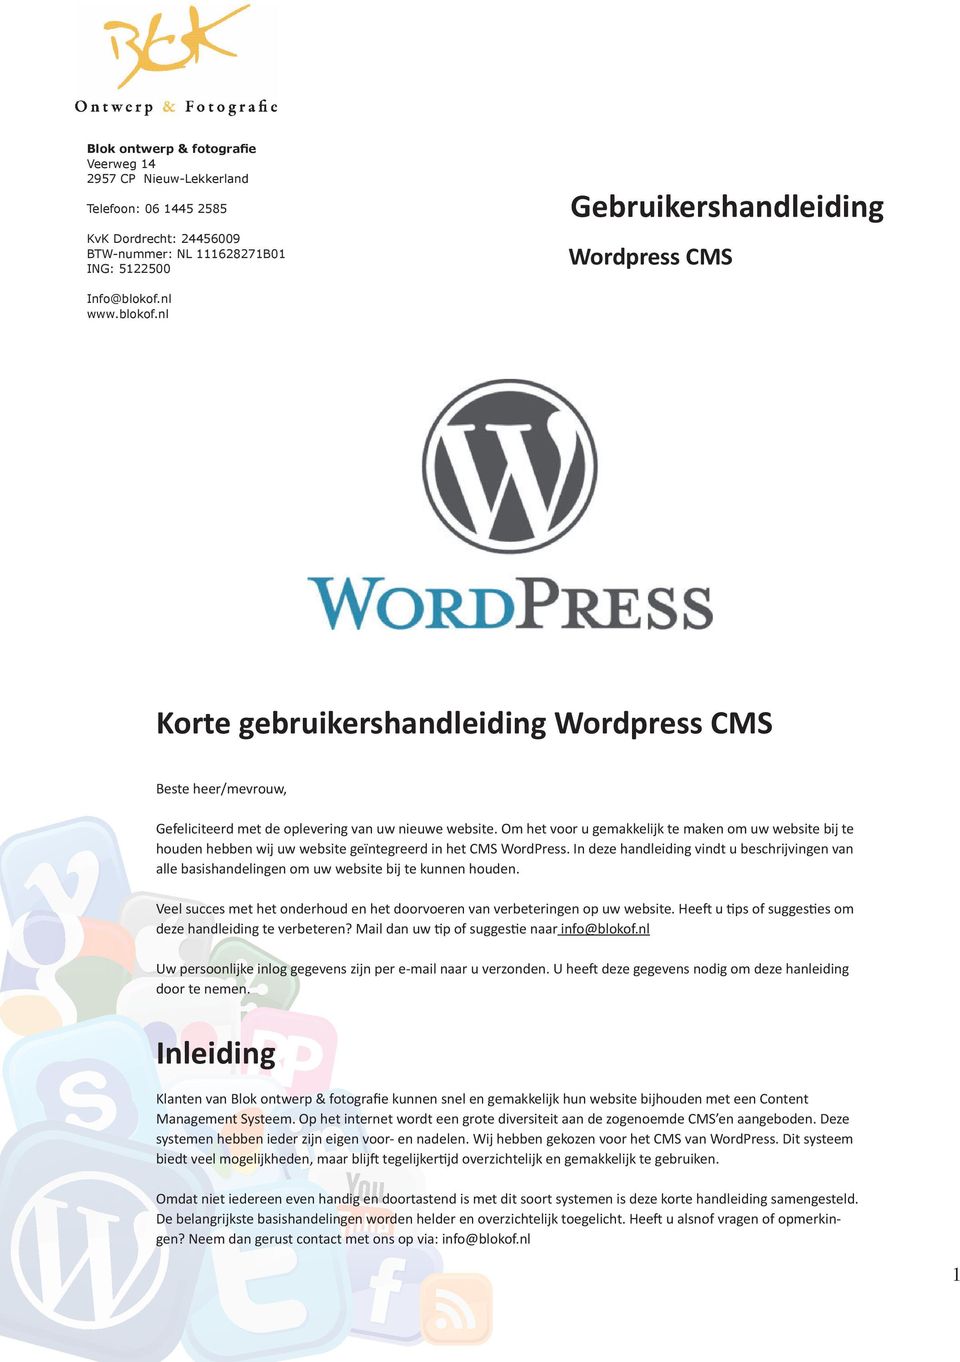 Om het voor u gemakkelijk te maken om uw website bij te houden hebben wij uw website geïntegreerd in het CMS WordPress.